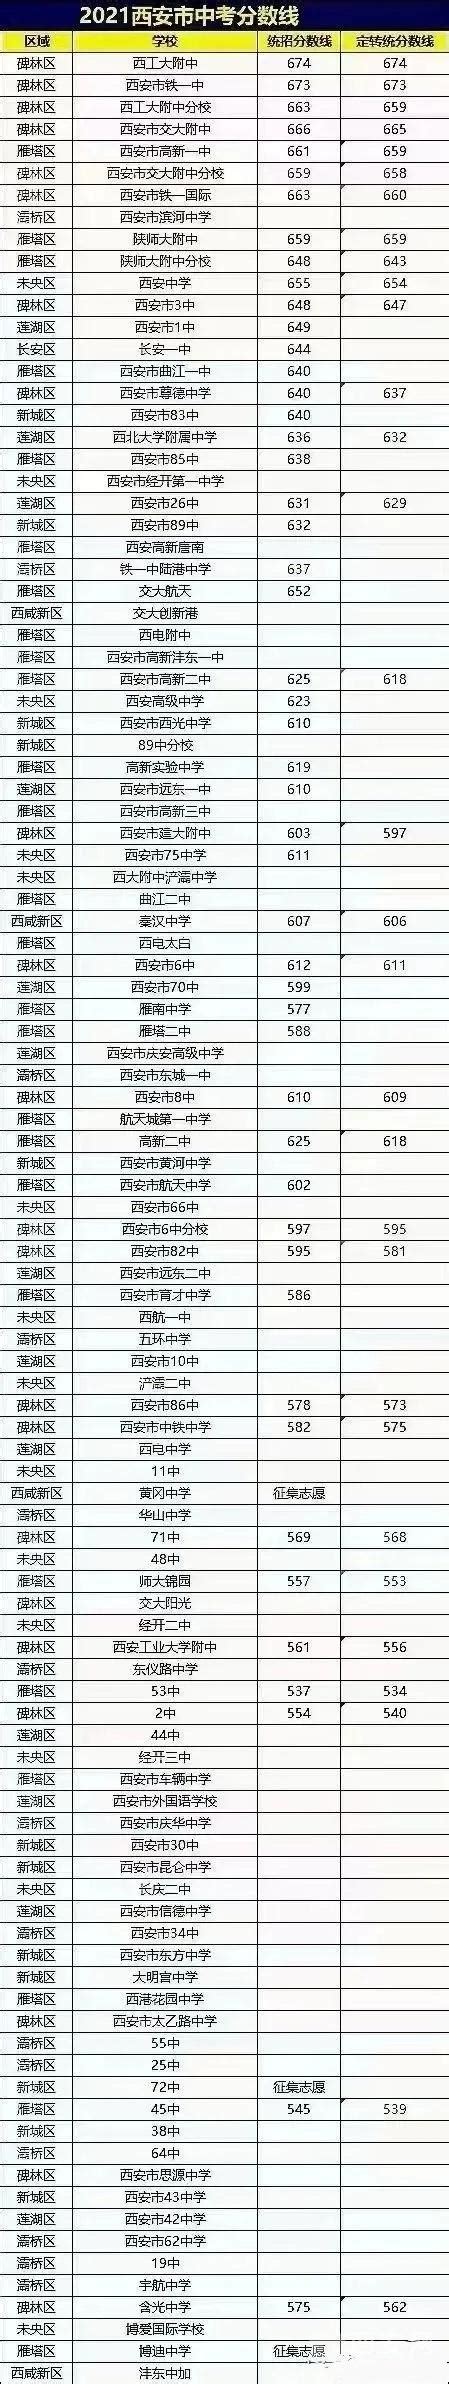 2012-2016年陕西省西安市城镇化及人口性别比情况_观研报告网